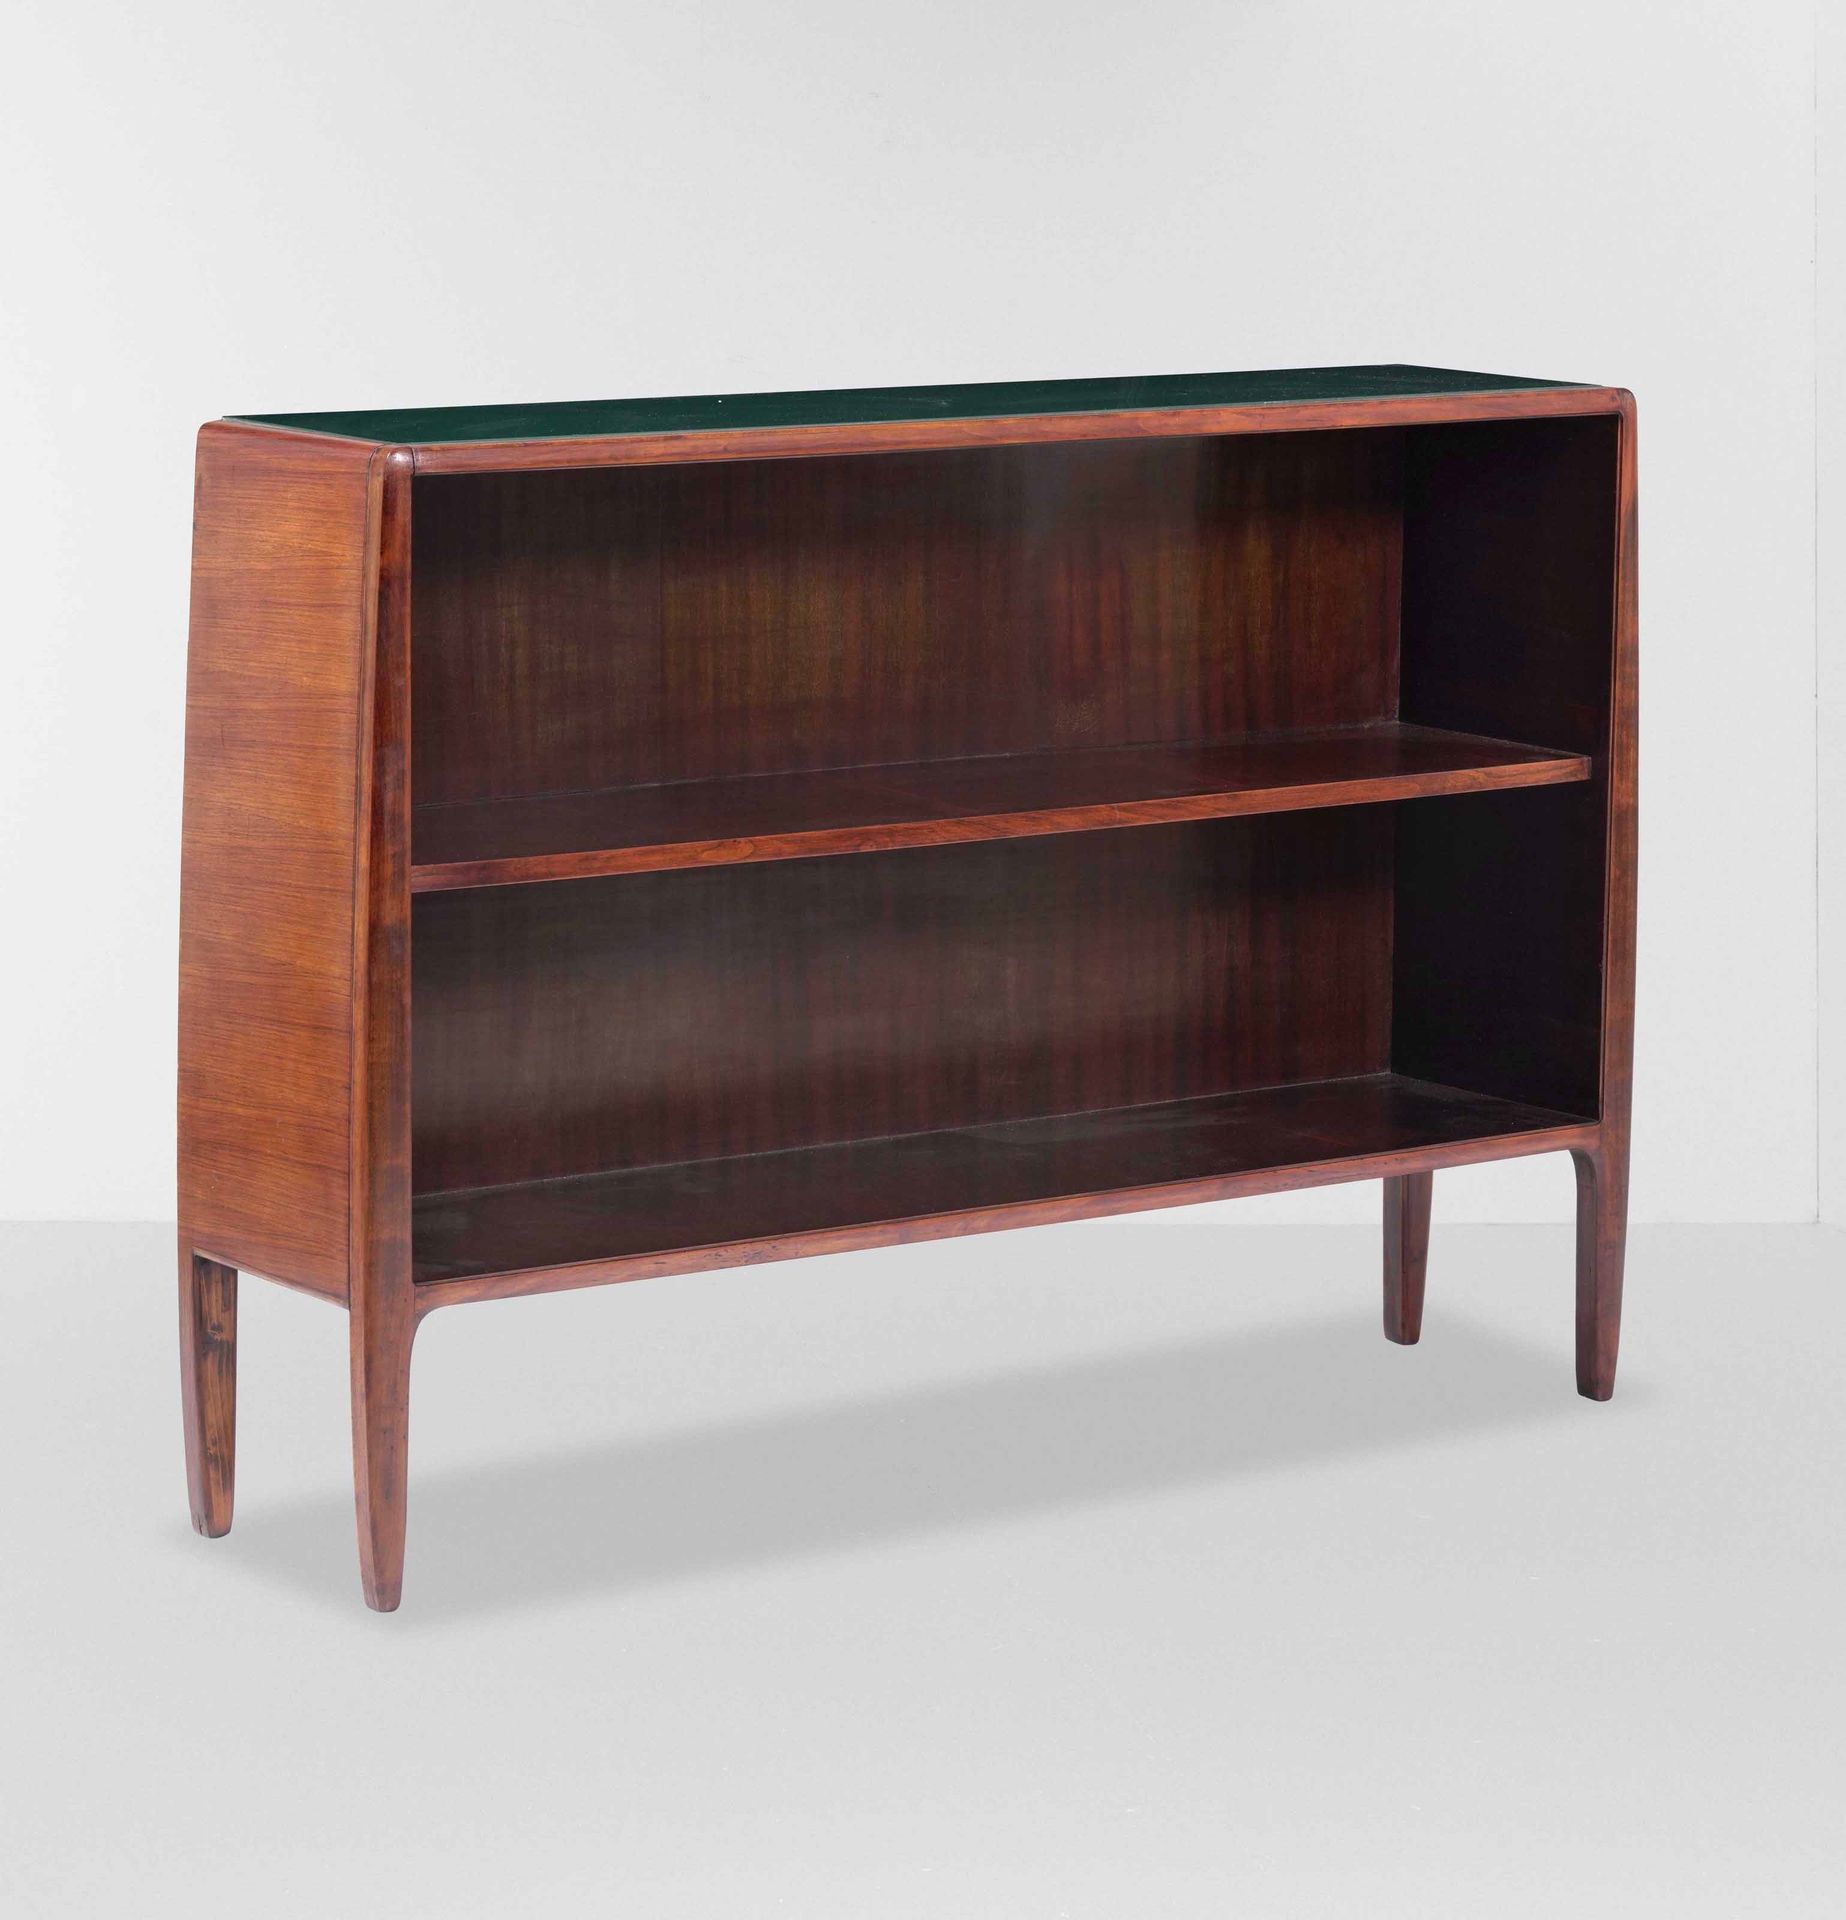 GIO PONTI Mueble librería con marco y soportes de madera, tapa de cristal colore&hellip;